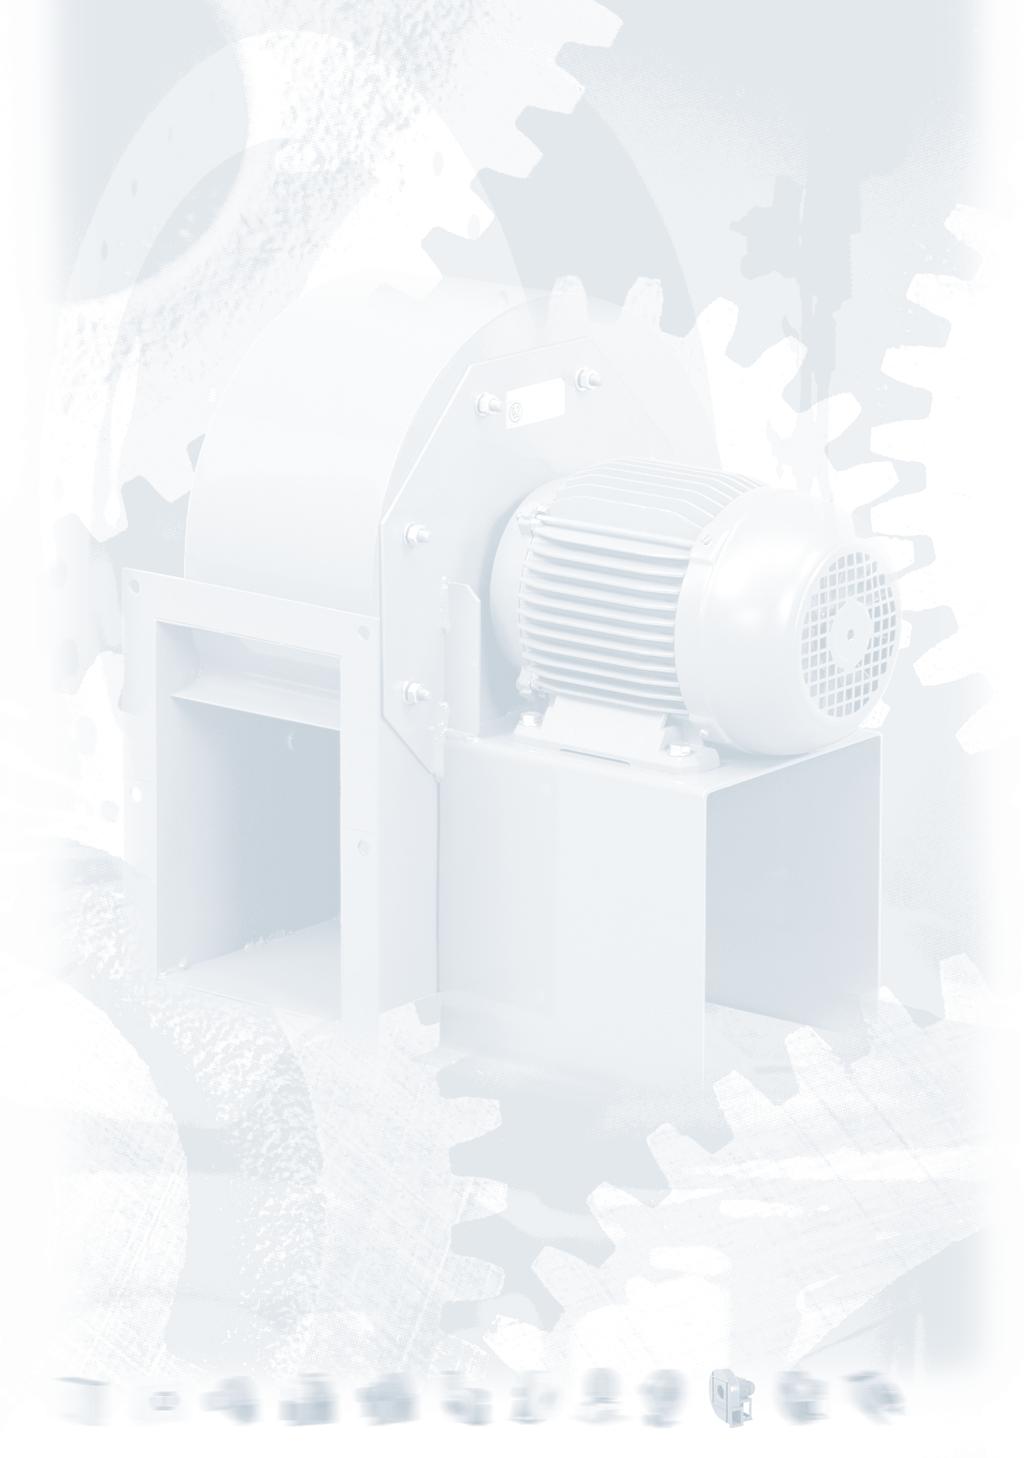 VENTLATOR CENTRFUGH A SEMPLCE ASPRAZONE A PALE ROVESCE Serie CBTR Ventilatori centrifughi a semplice aspirazione, per aspirazione di aria calda a 80 C in servizio continuo, costruiti in lamiera di